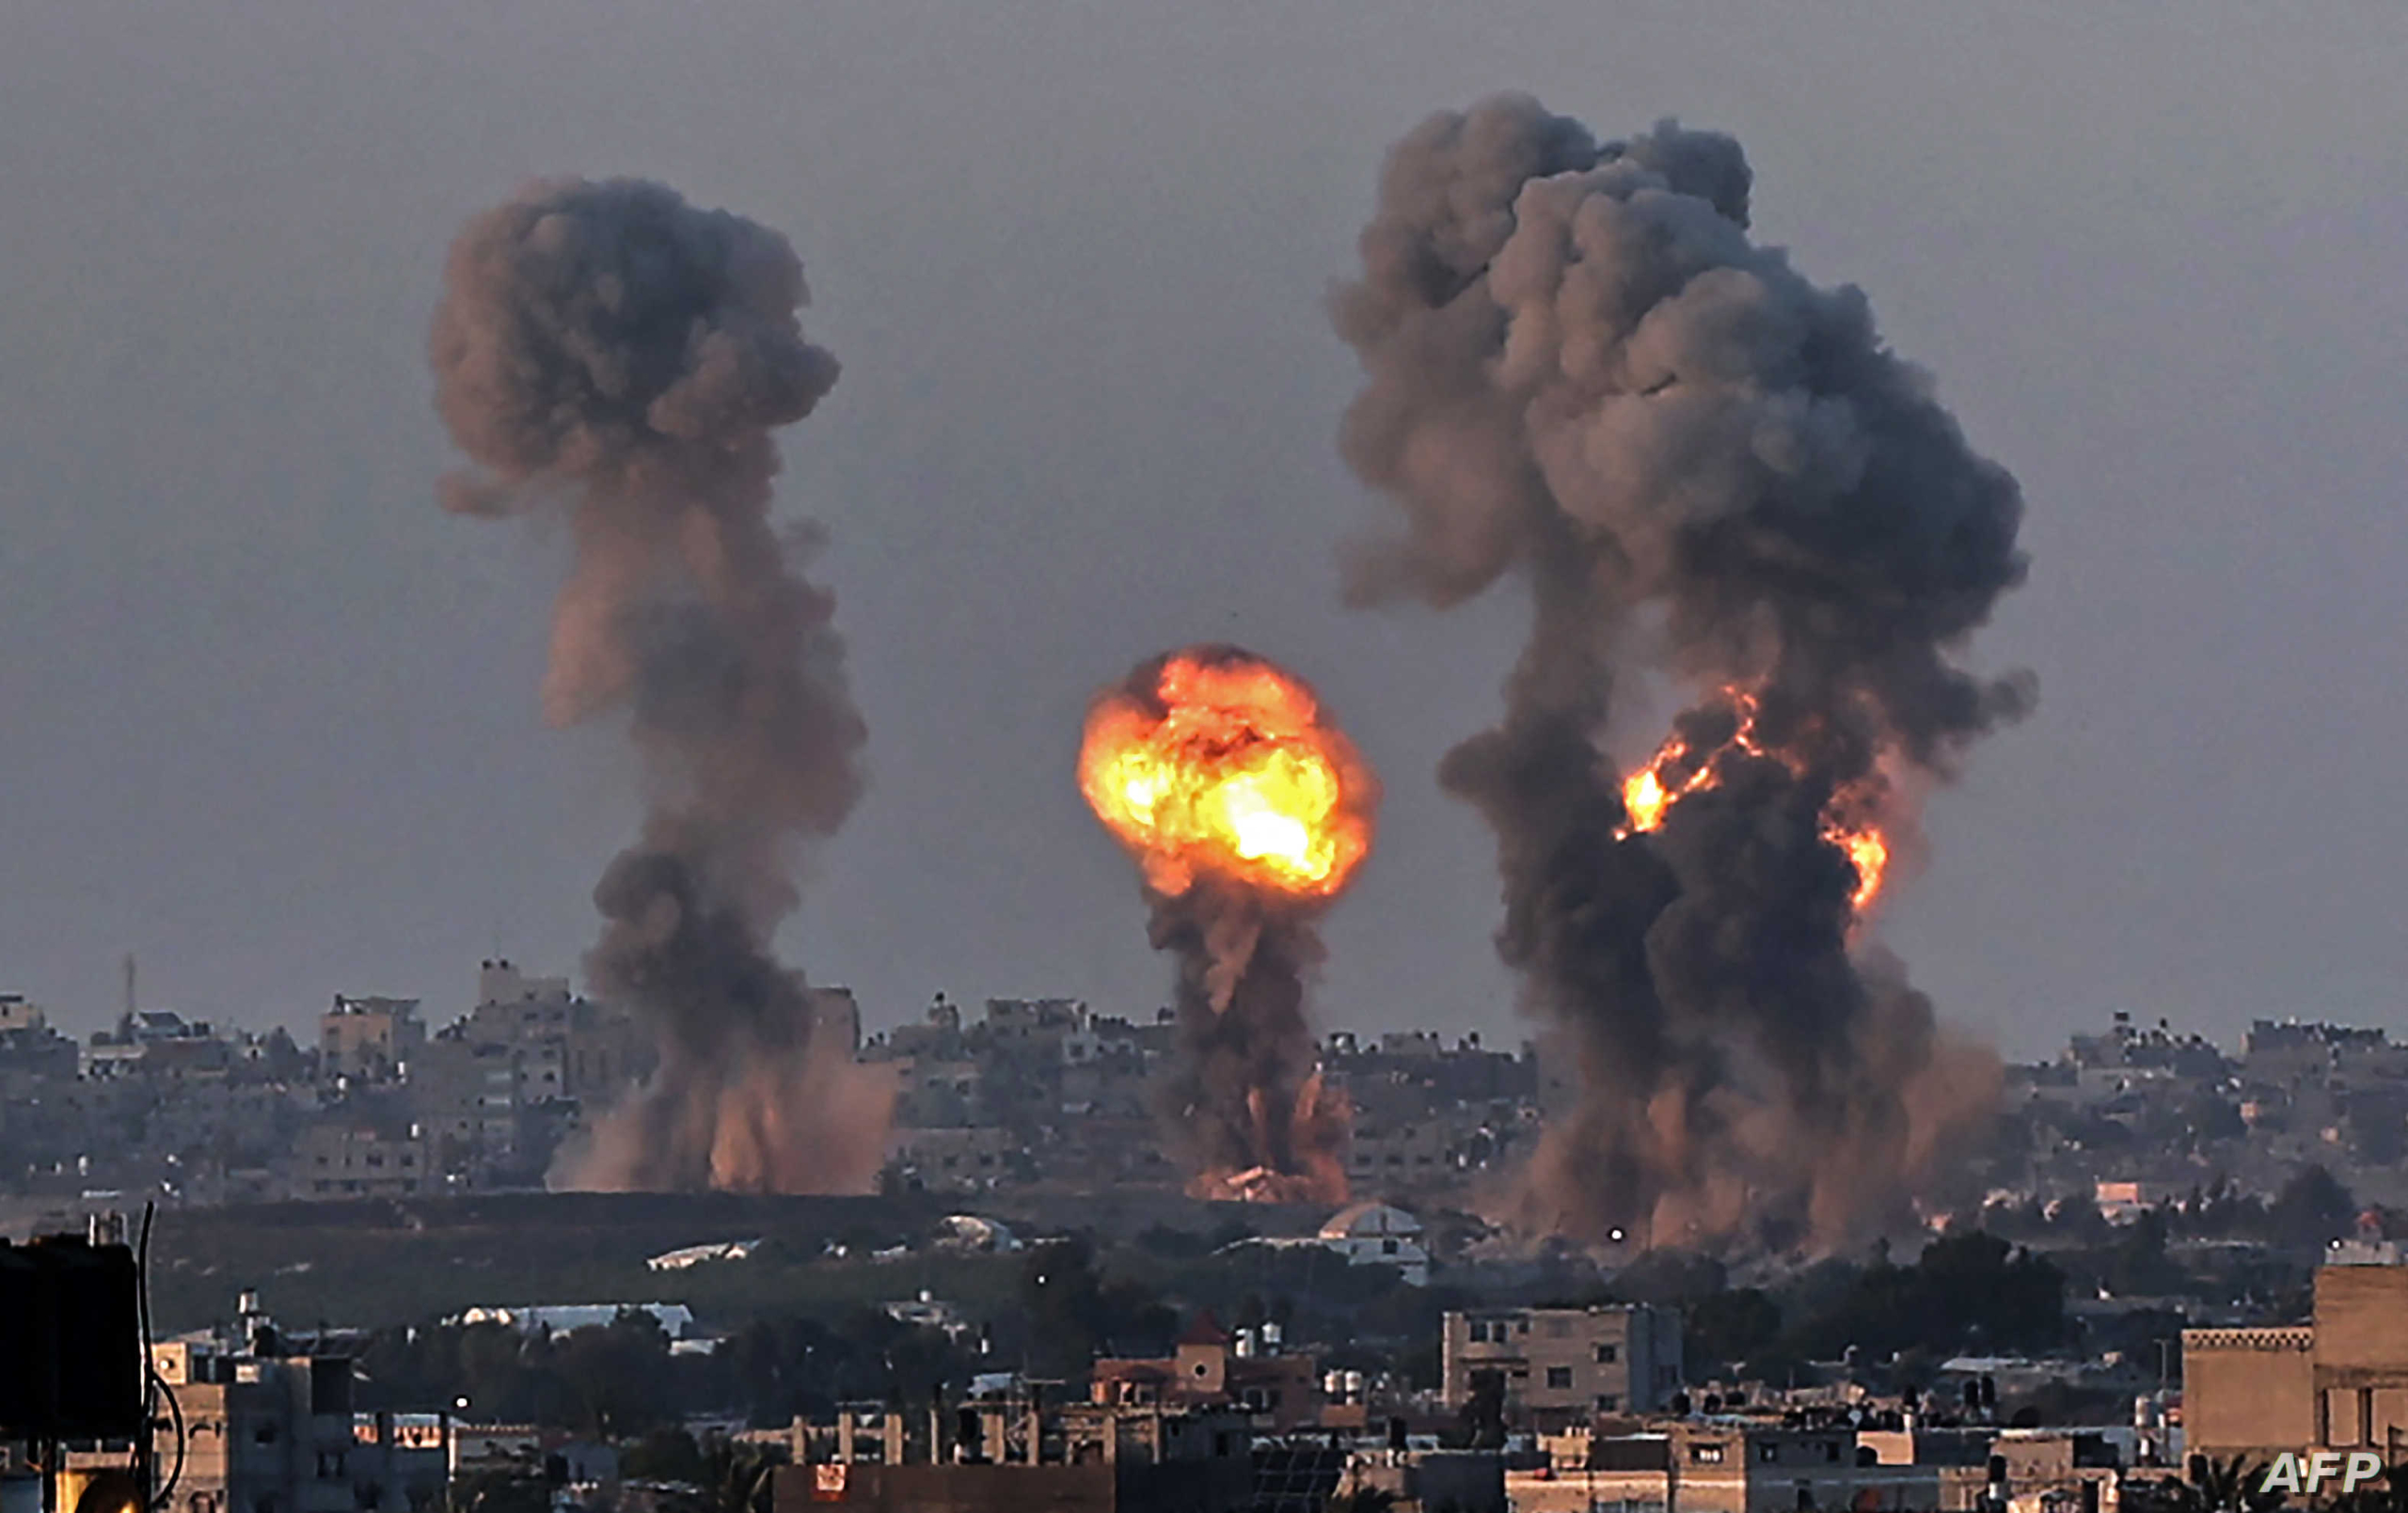 إلقاء قنبلة نووية غلى قطاع غزة يجر انتقادات دولية على إسرائيل ويكشف نواياها التصعيدية